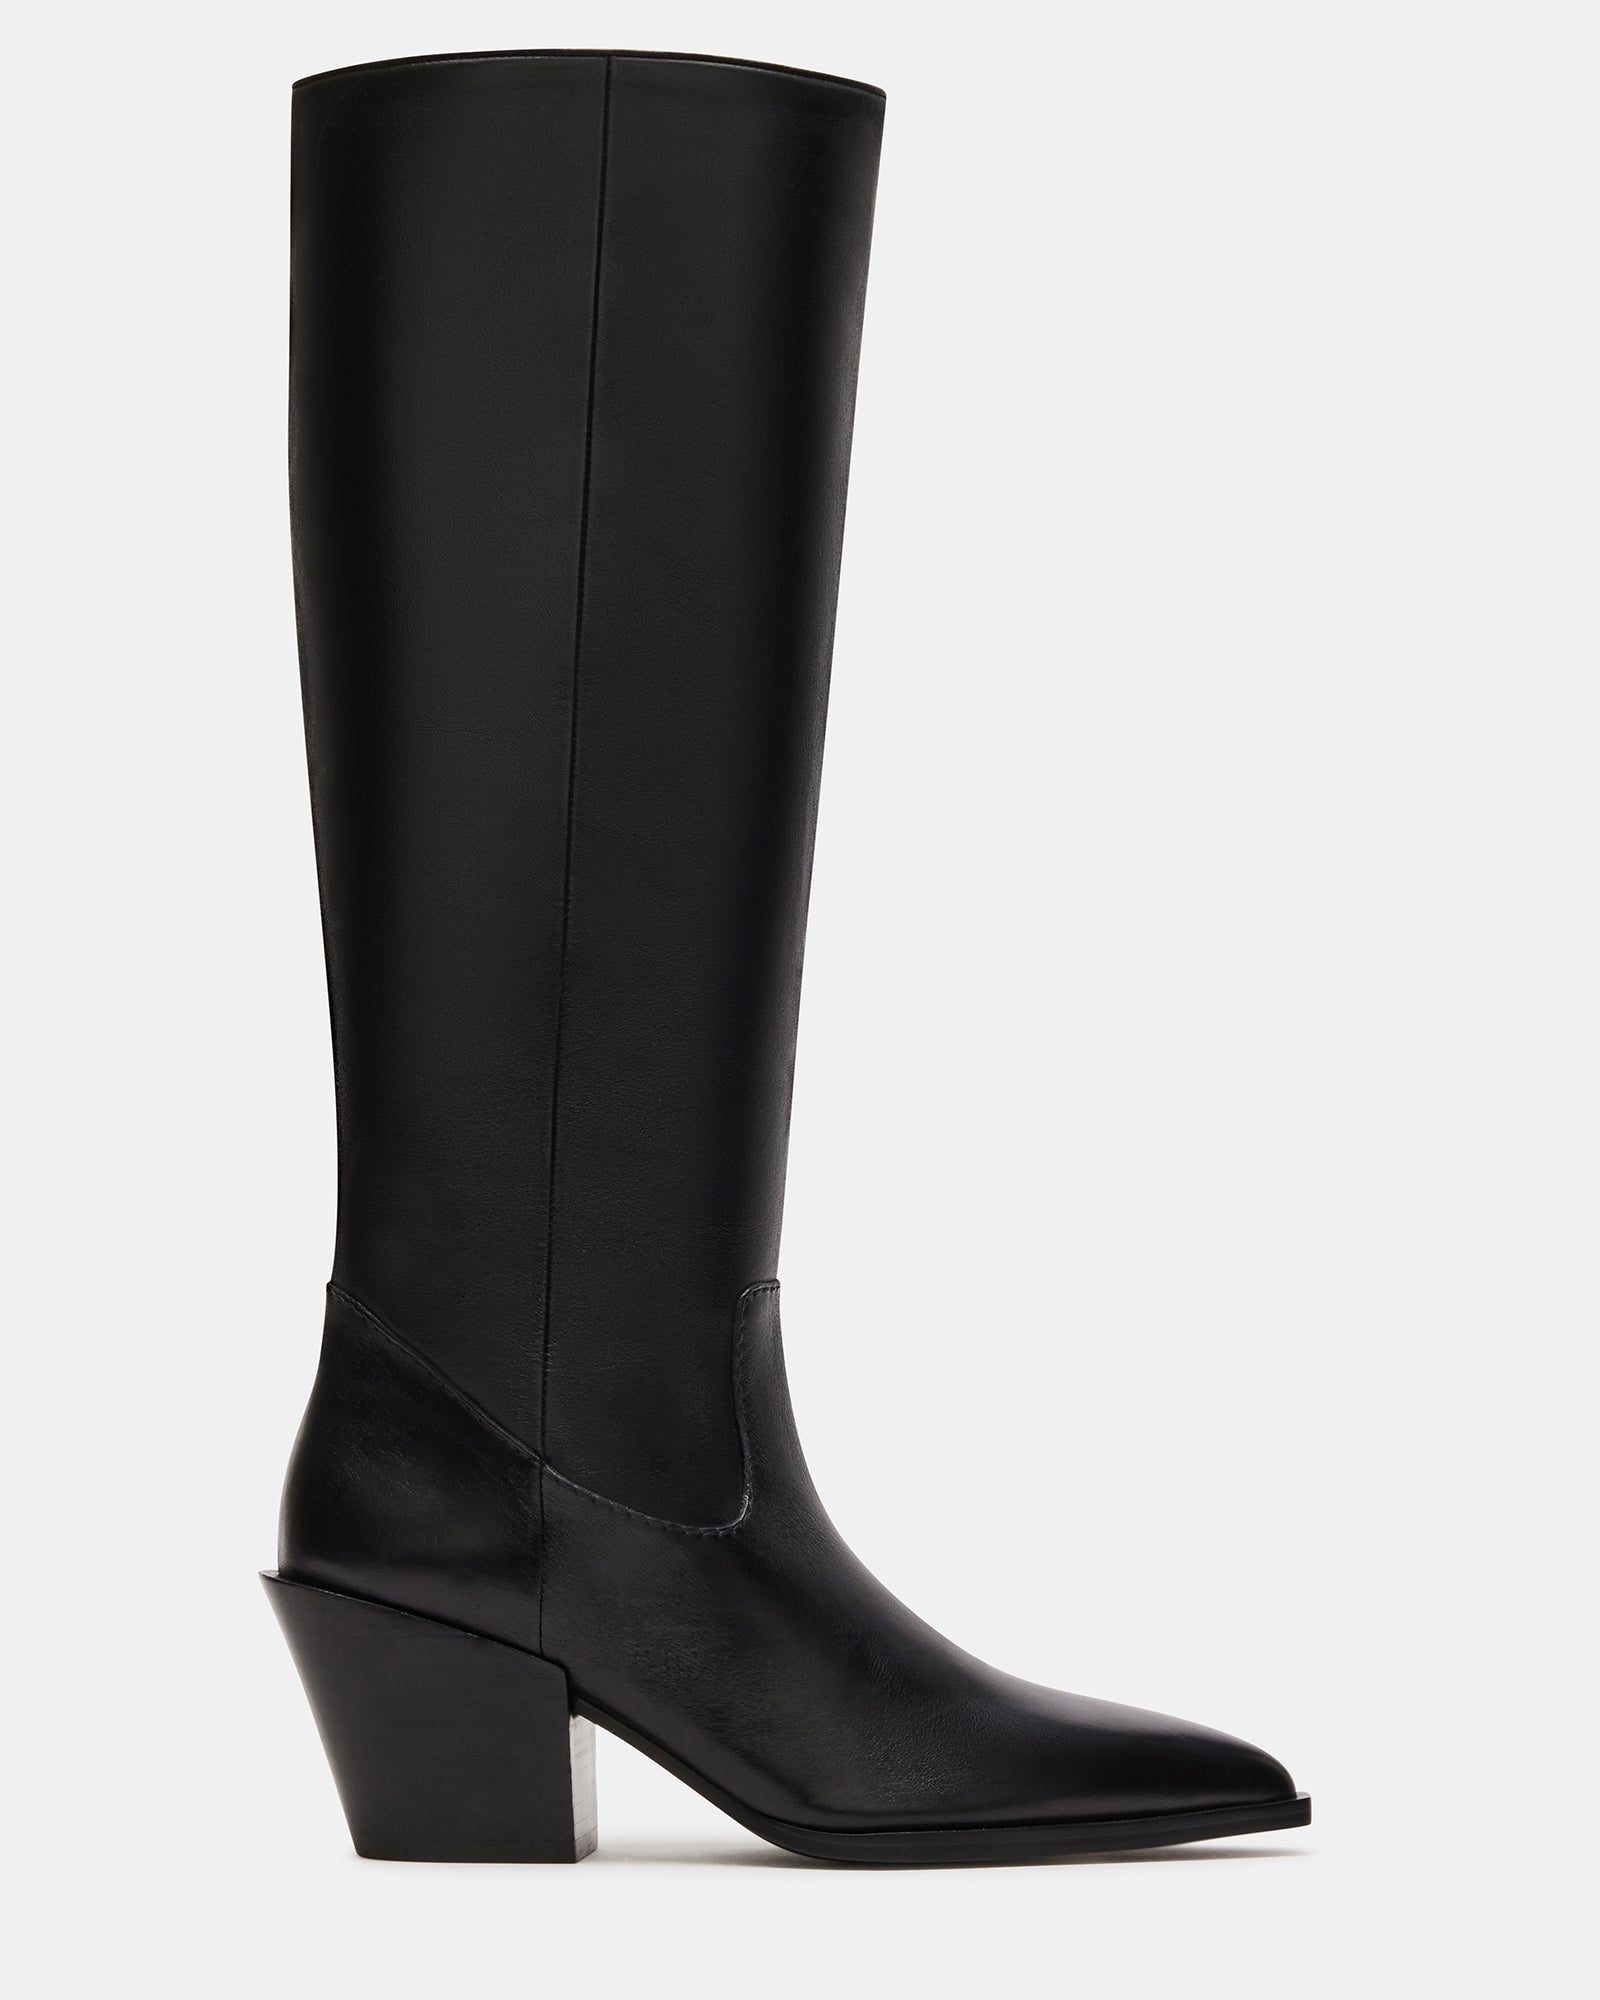 LAVAN Black Leather Kitten Heel Knee High Boot | Women's Boots